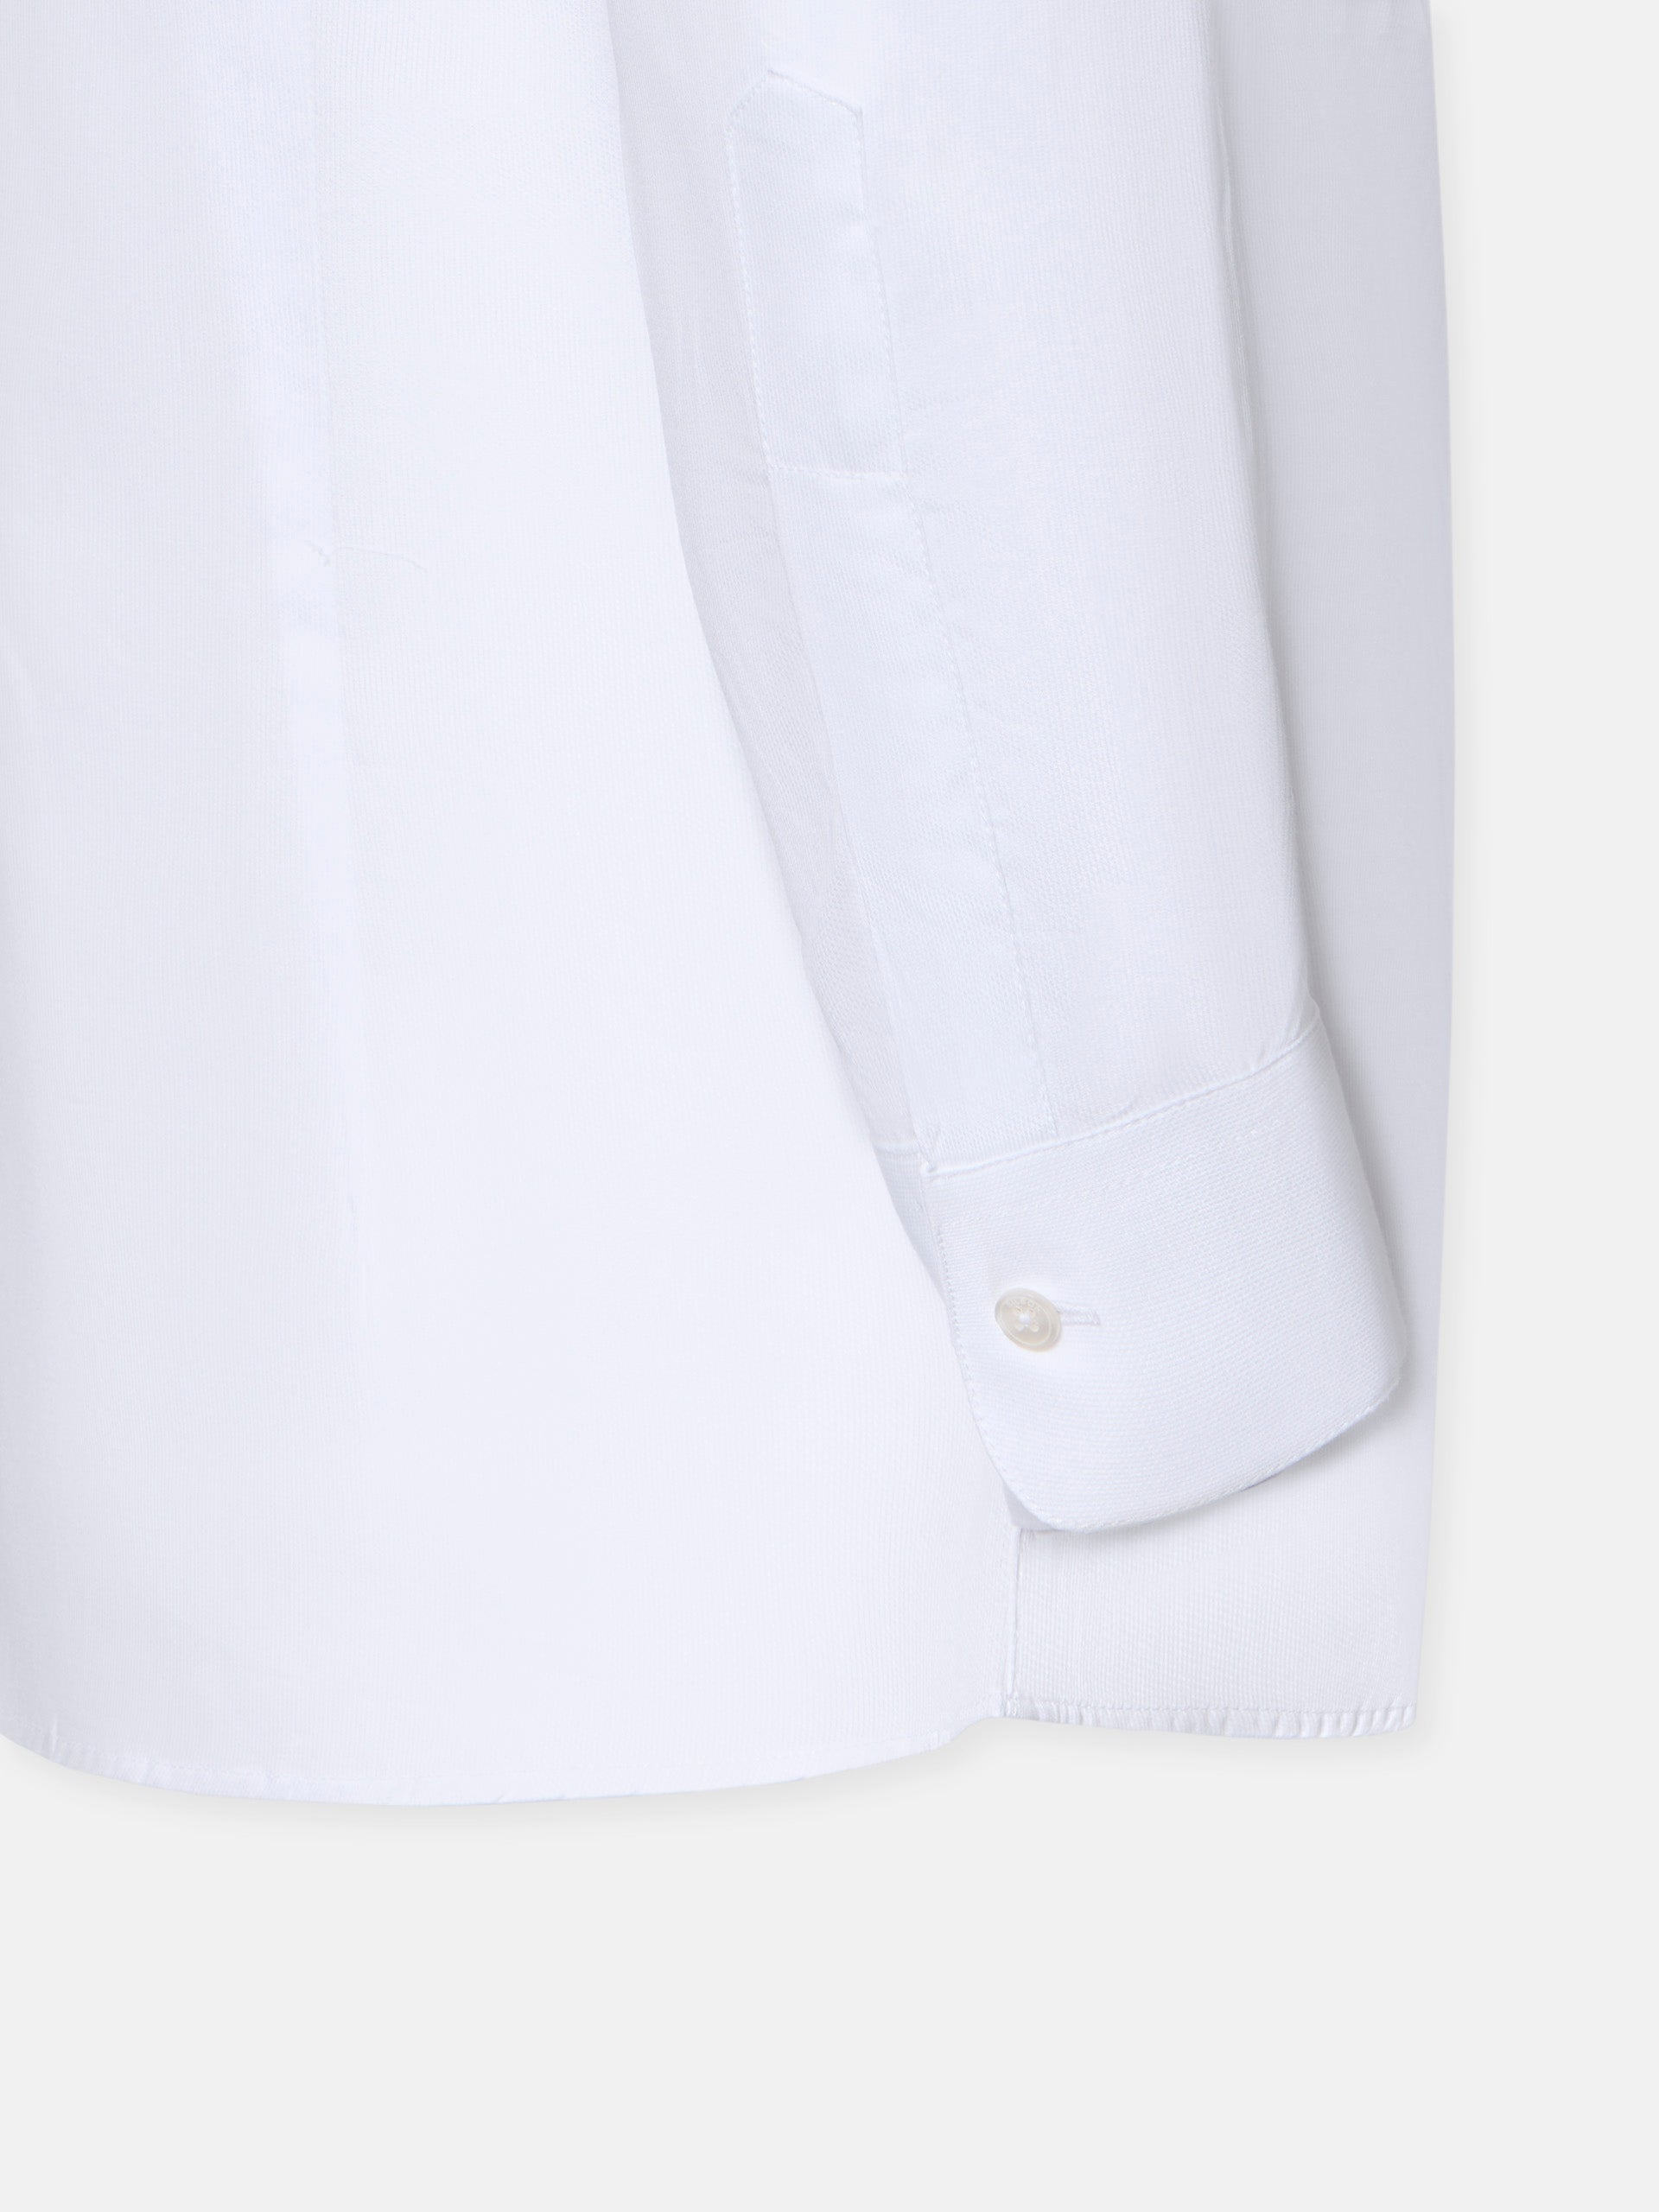 Camisa vestir cuello esmoquin blanca